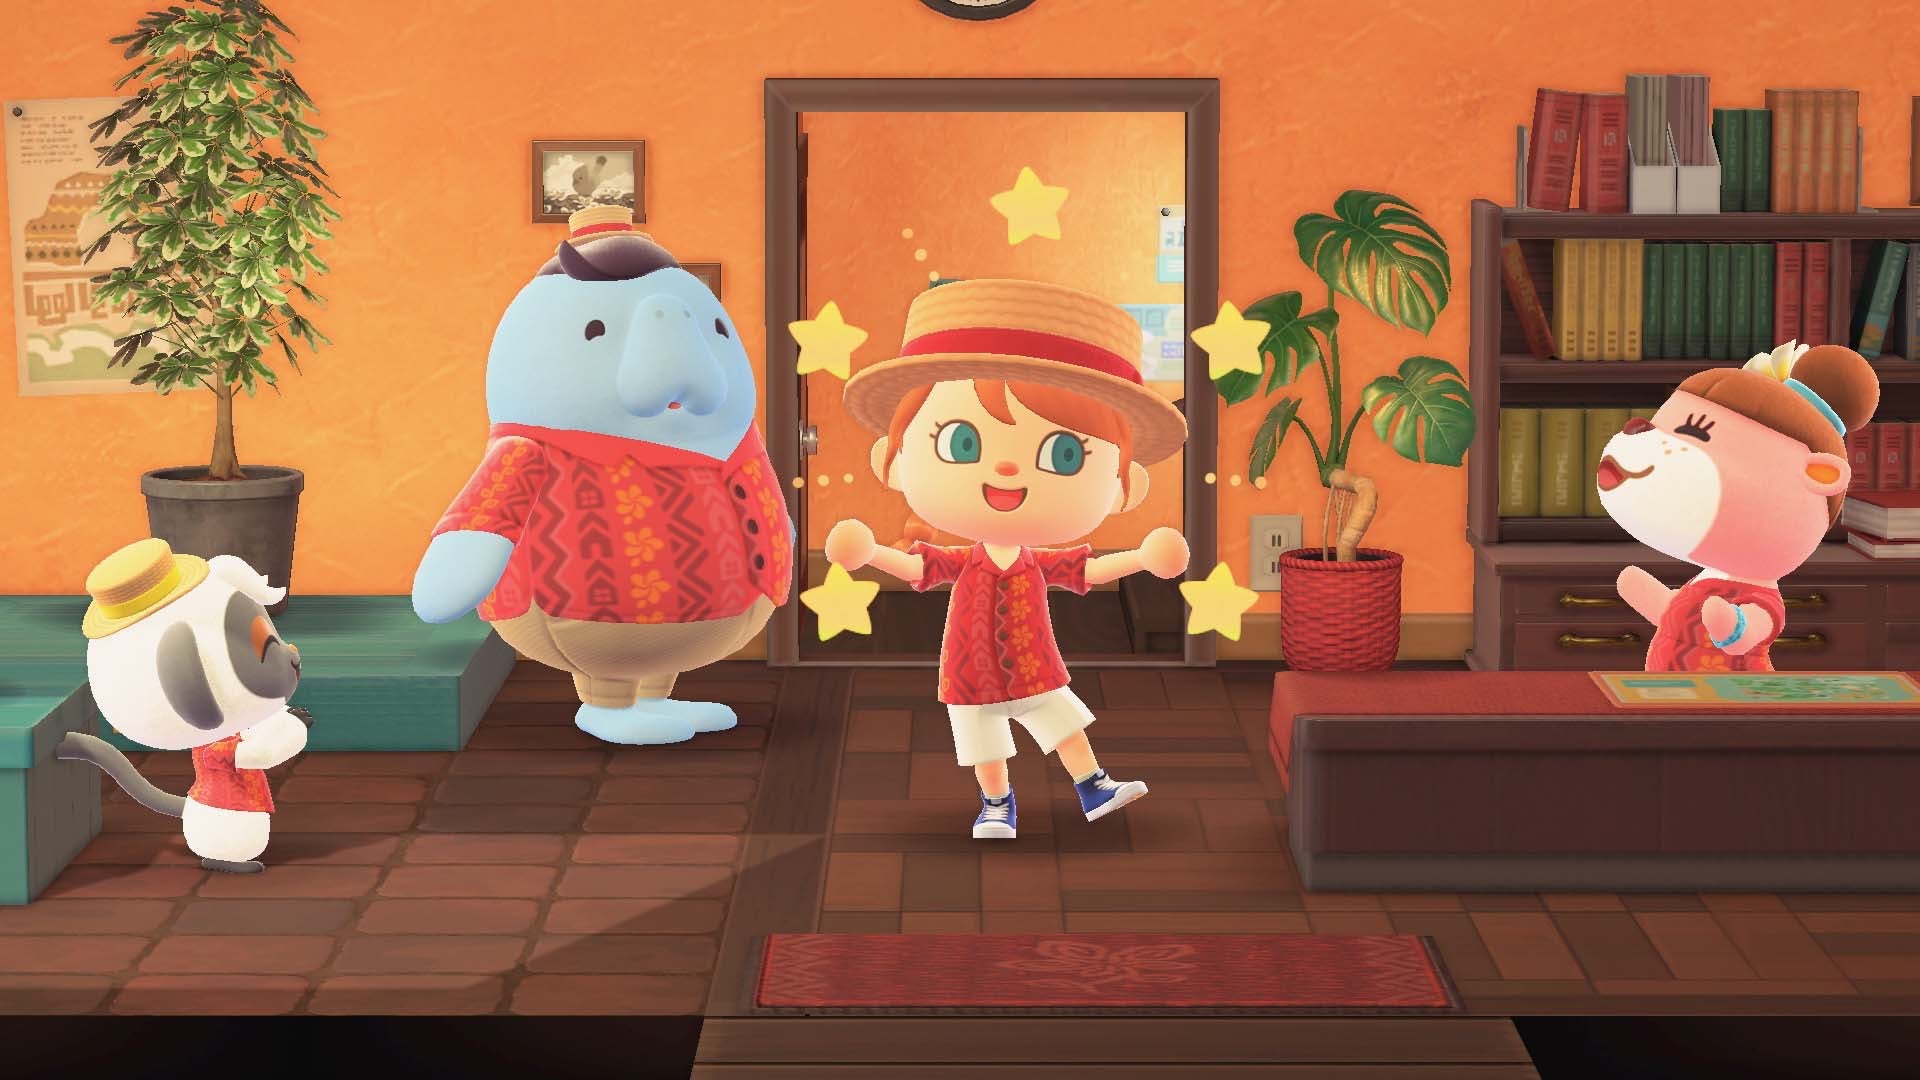 Thanksgiving: Eguchi, Katsuya & Nogami, Hisashi. "Animal Crossing." Nintendo.